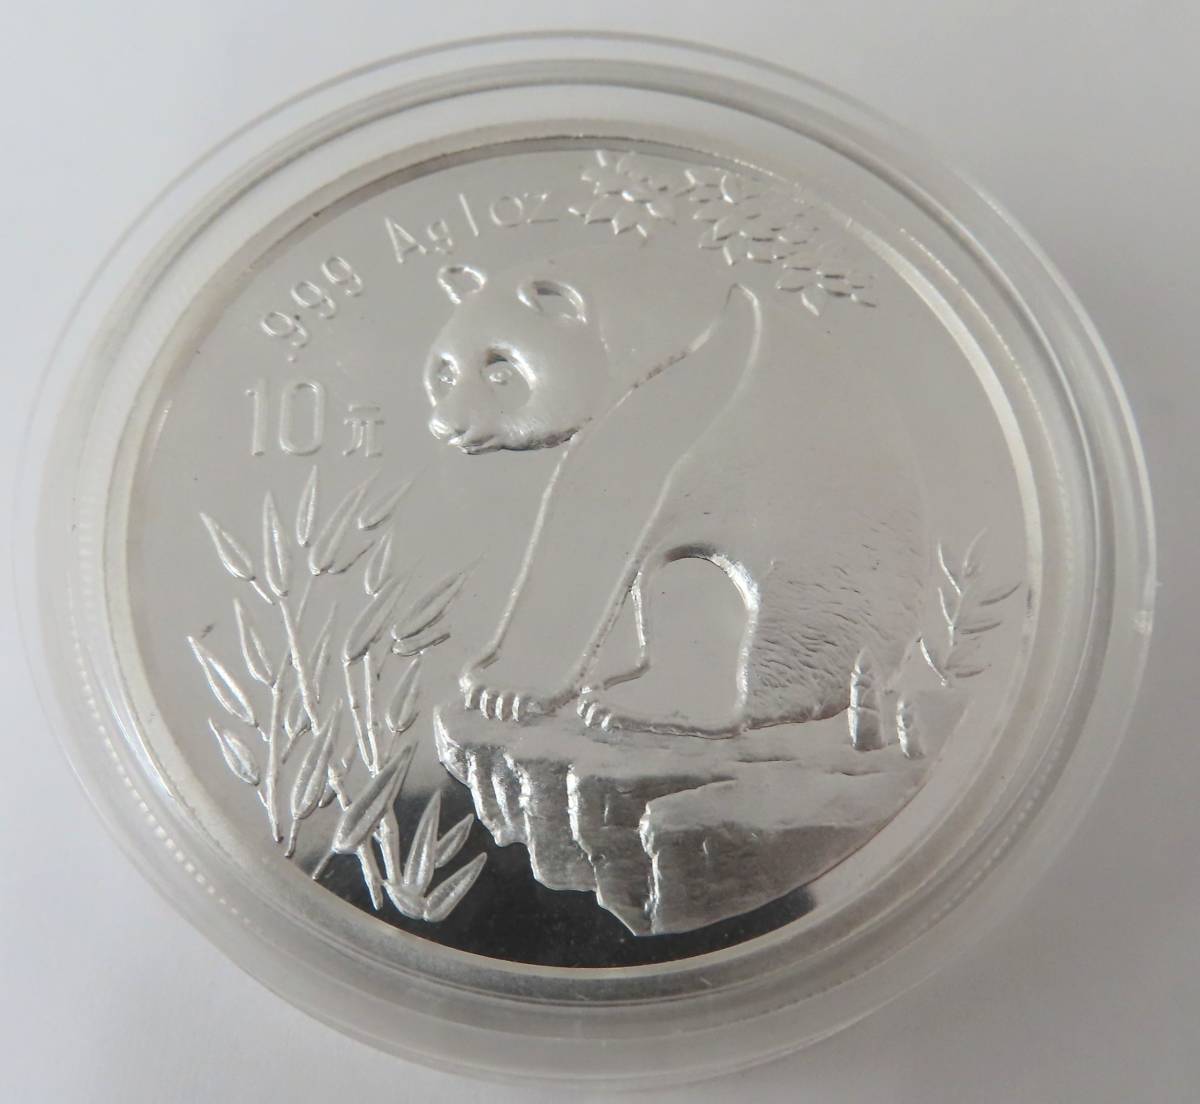 61291 パンダコイン 中国記念硬貨 中国人民共和国 1993年 10元 銀貨